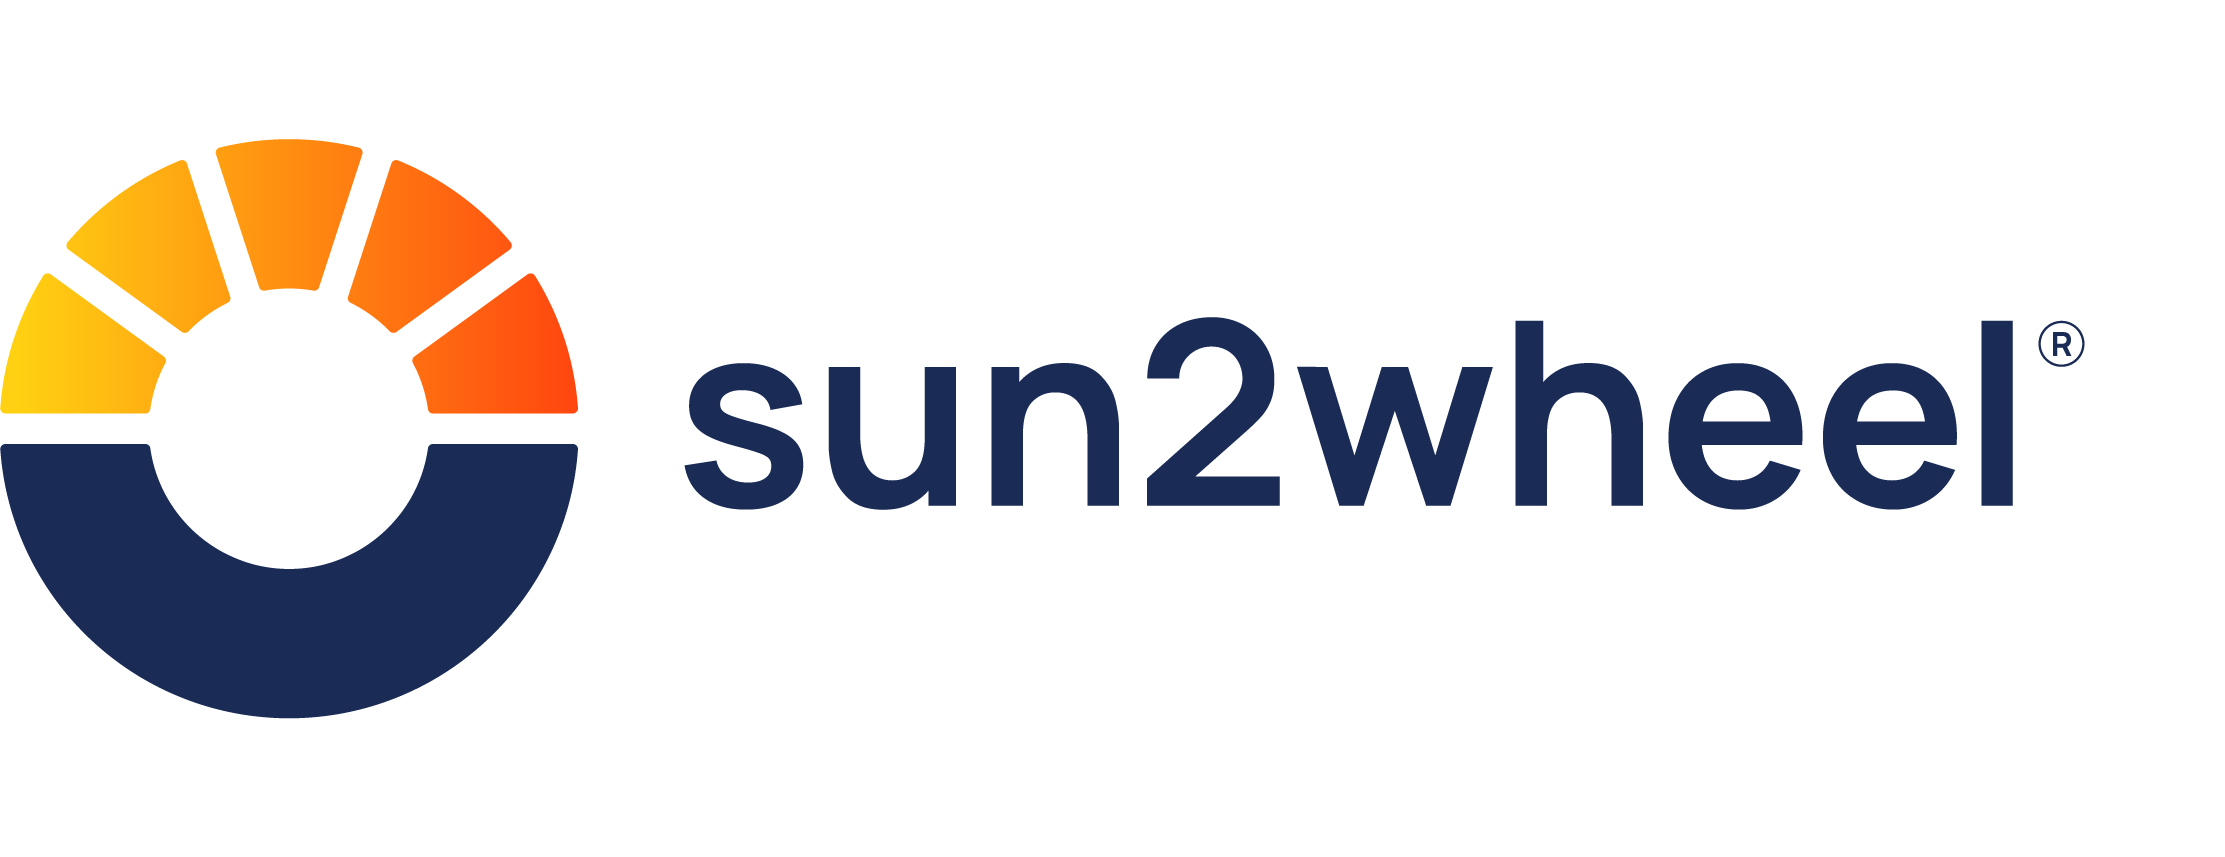 sun2wheel | Logo